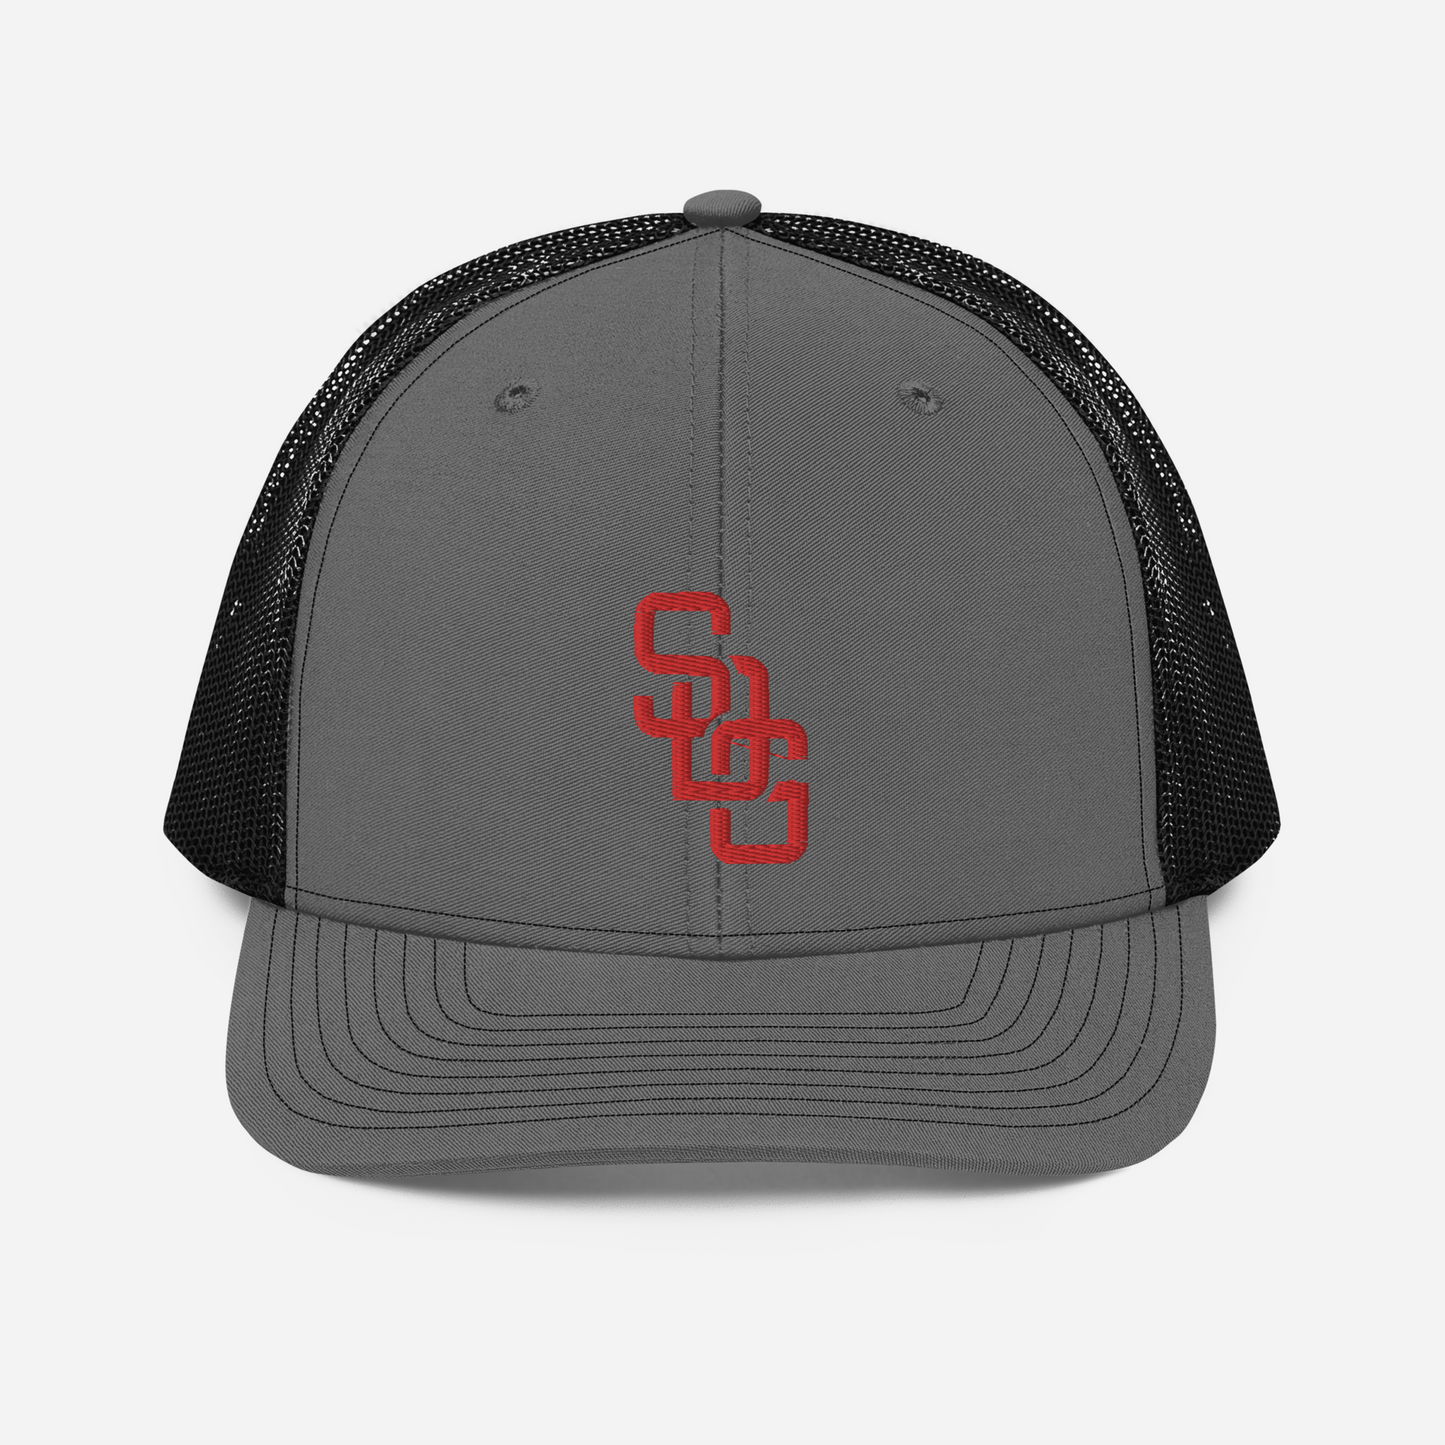 SDG Richardson Trucker Hat